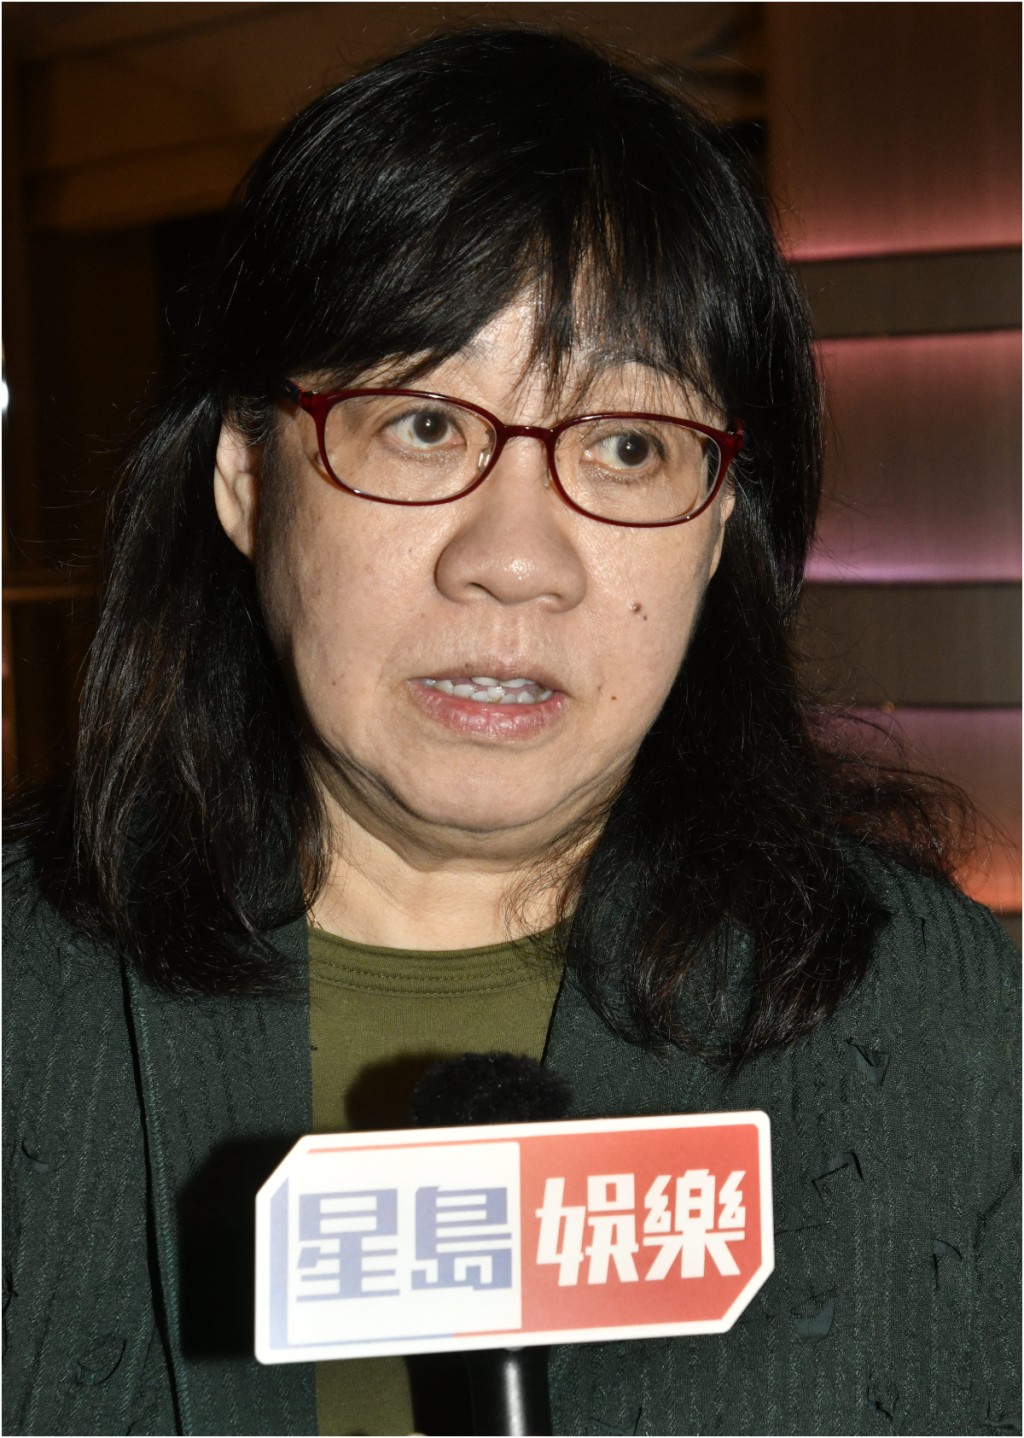 余詠珊指沒有留意近日有關TVB的新聞。